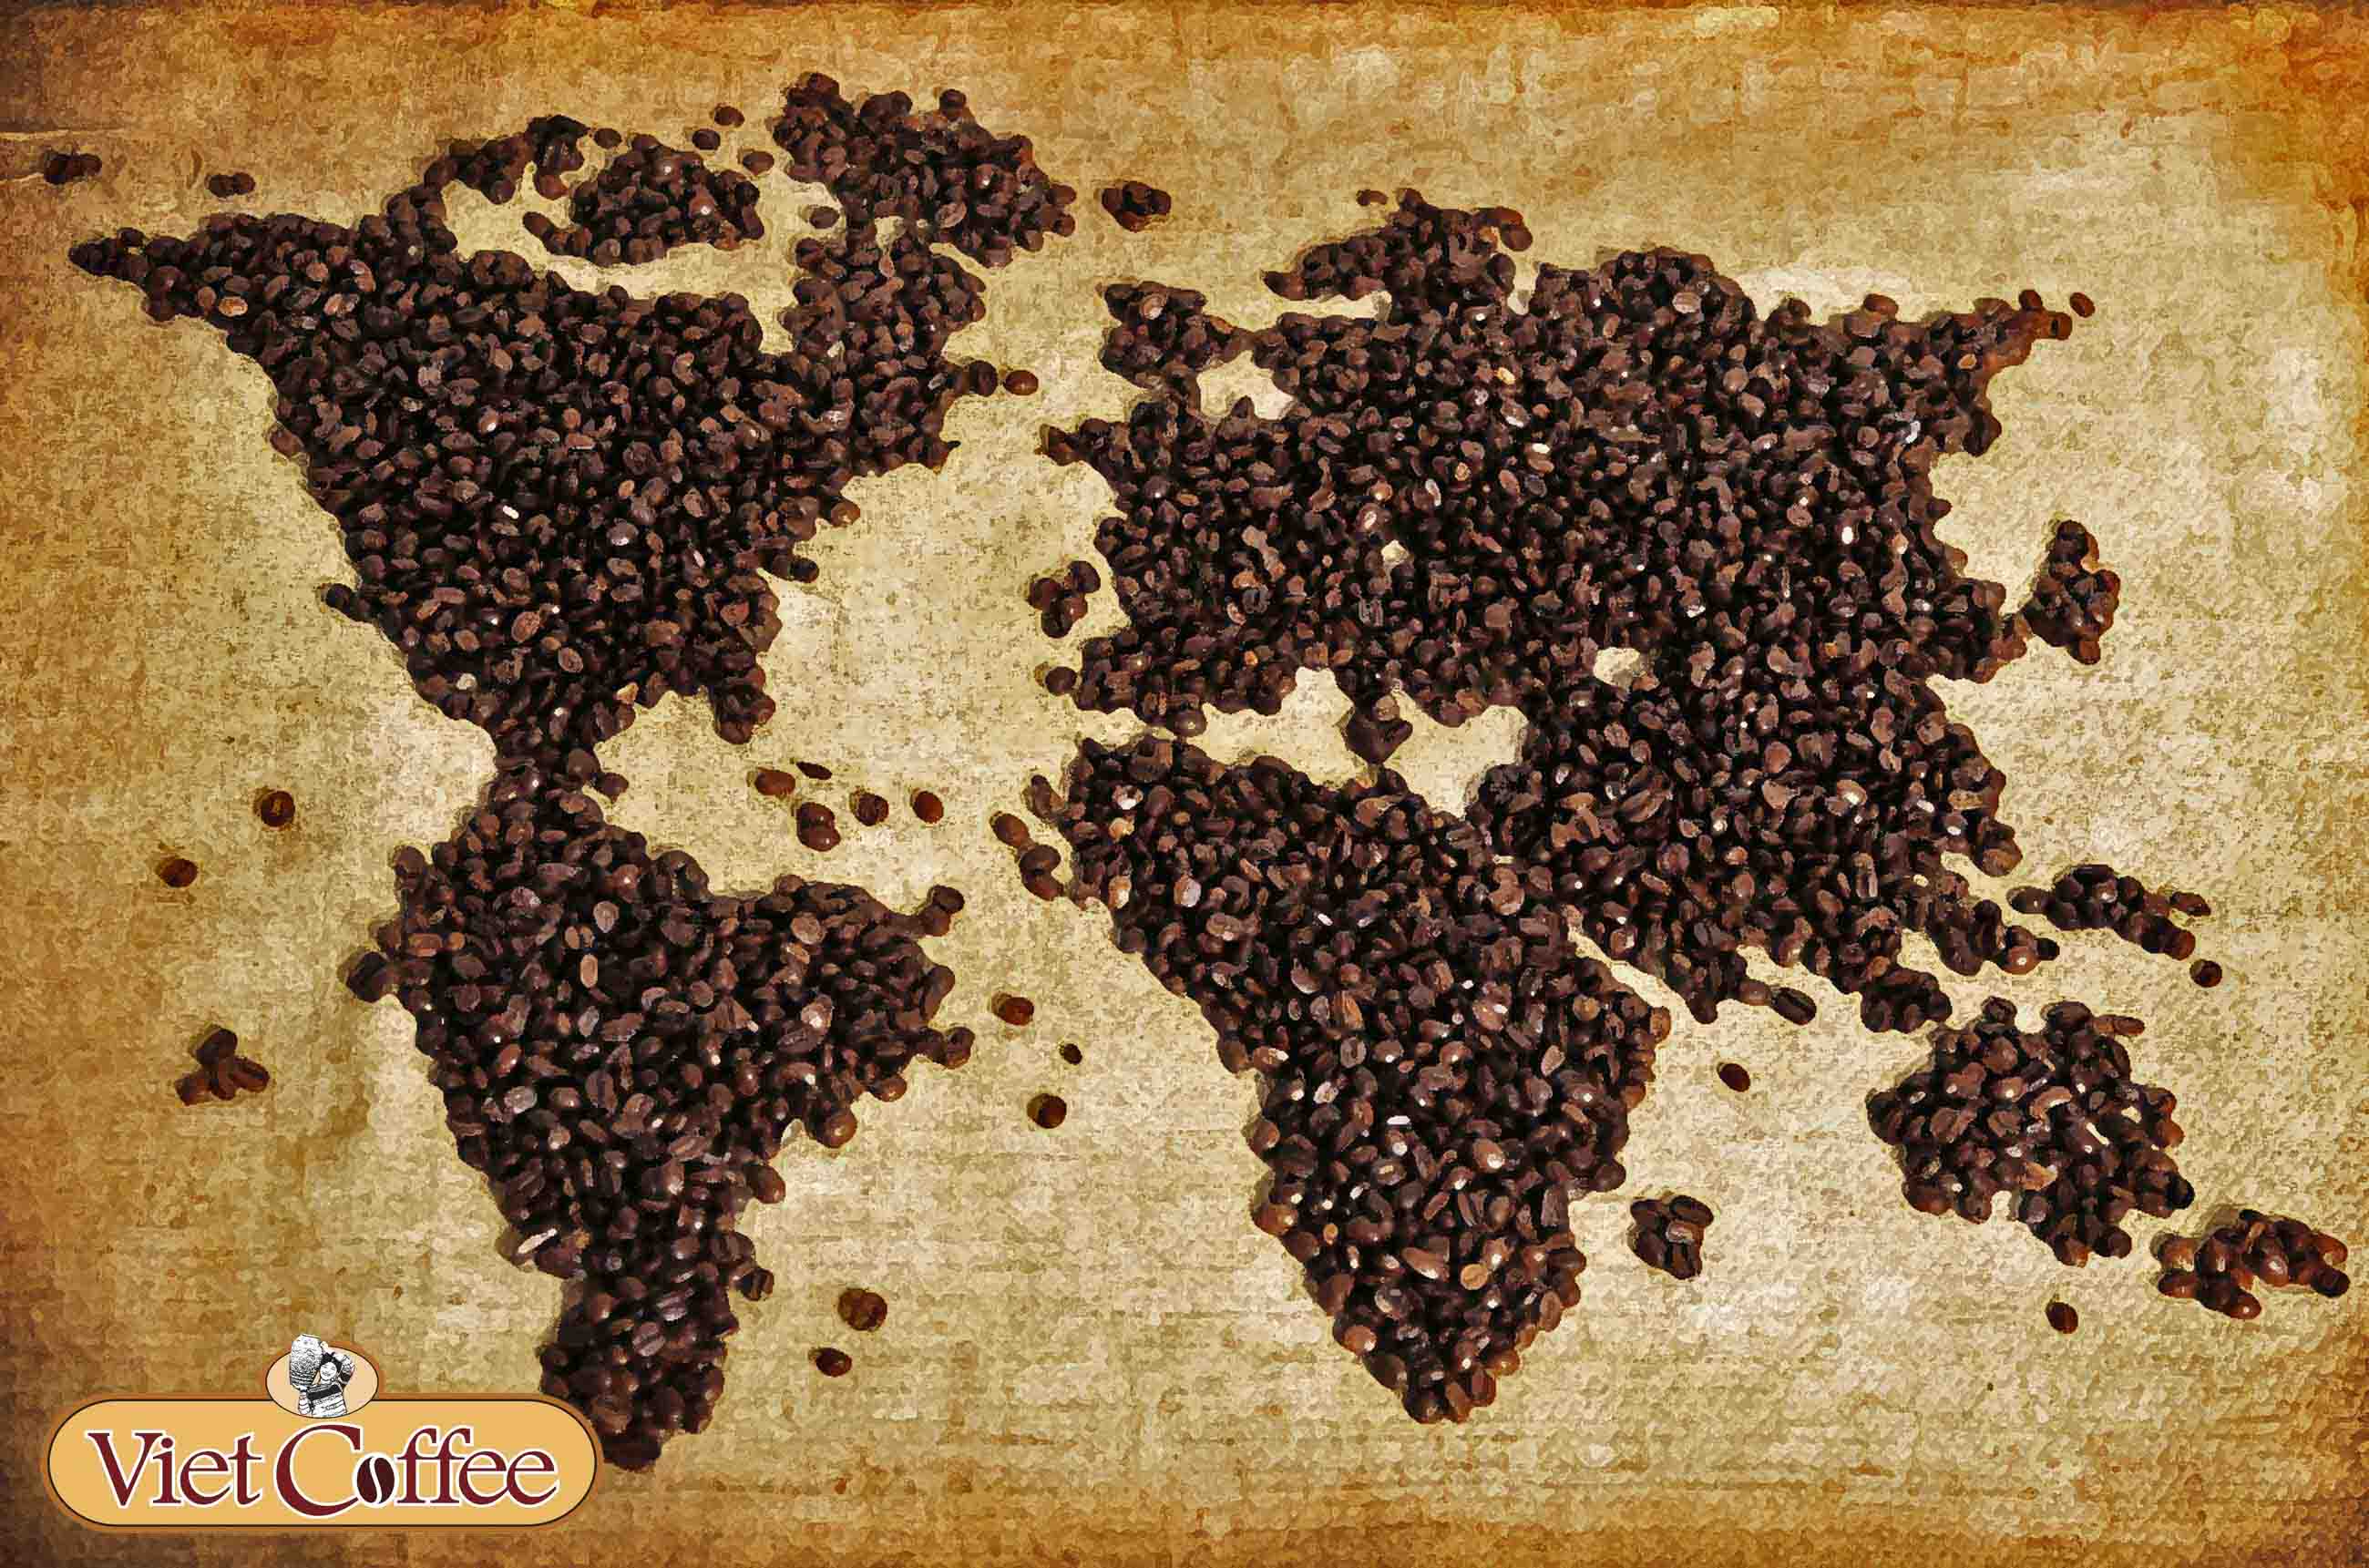 Cà phê là thức uống được ưa chuộng khắp thế giới